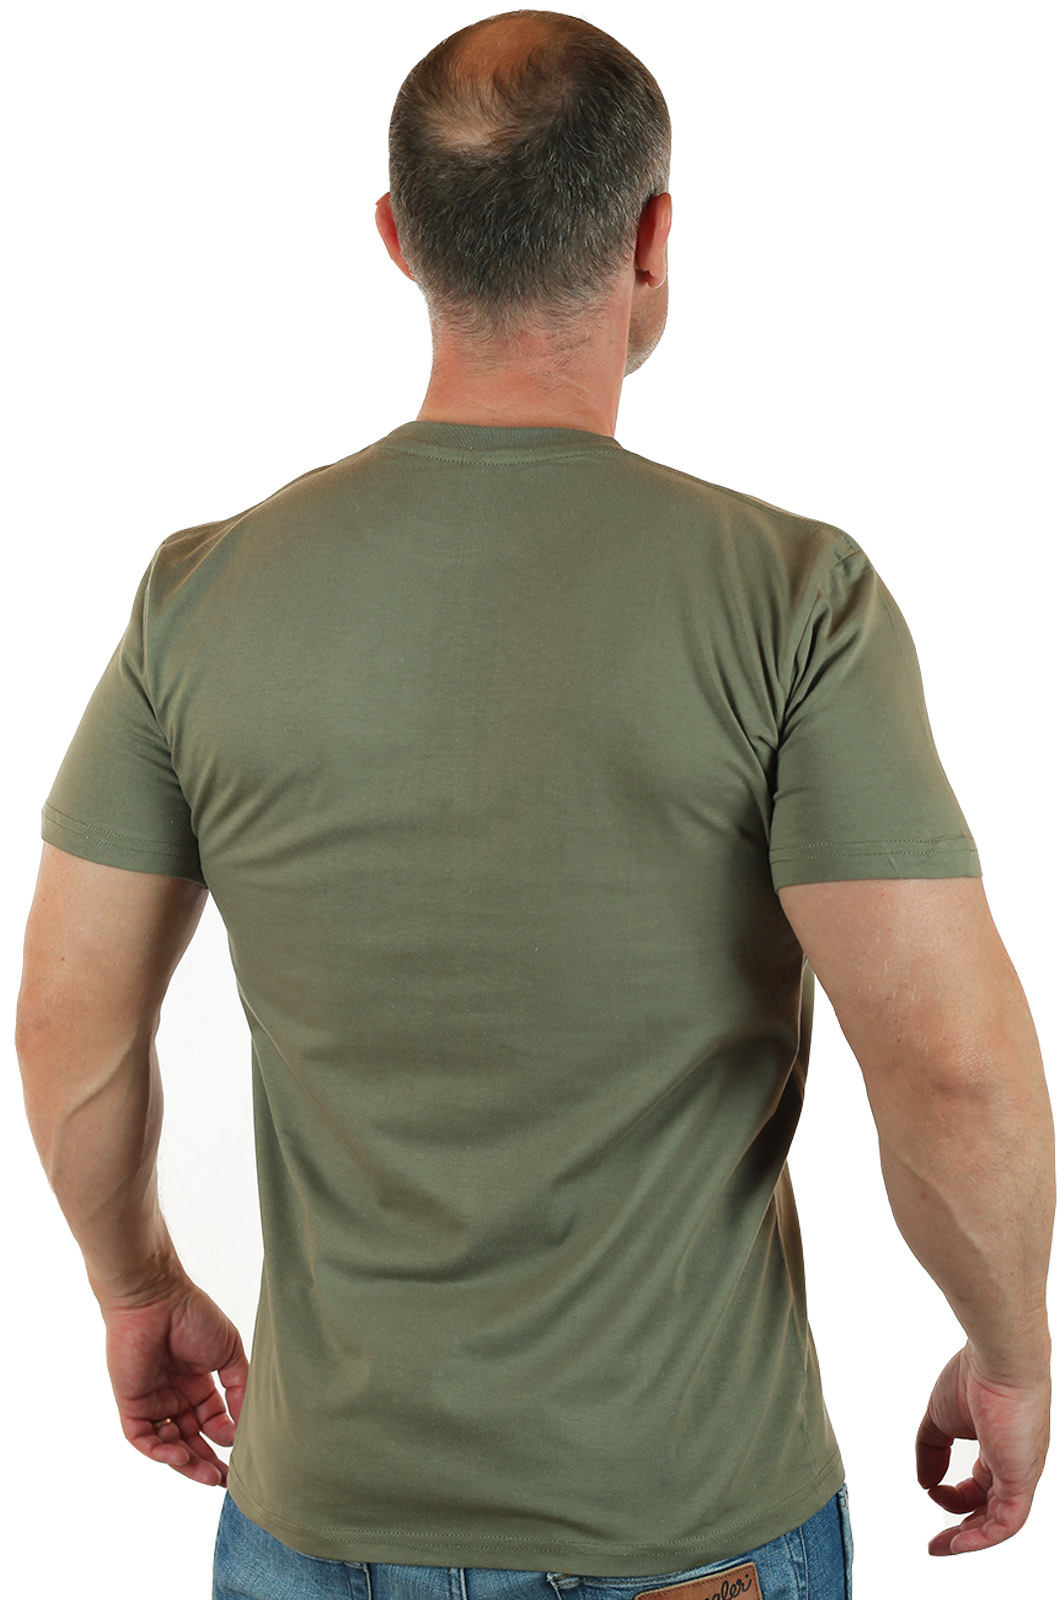 Мужские военные футболки от производителя